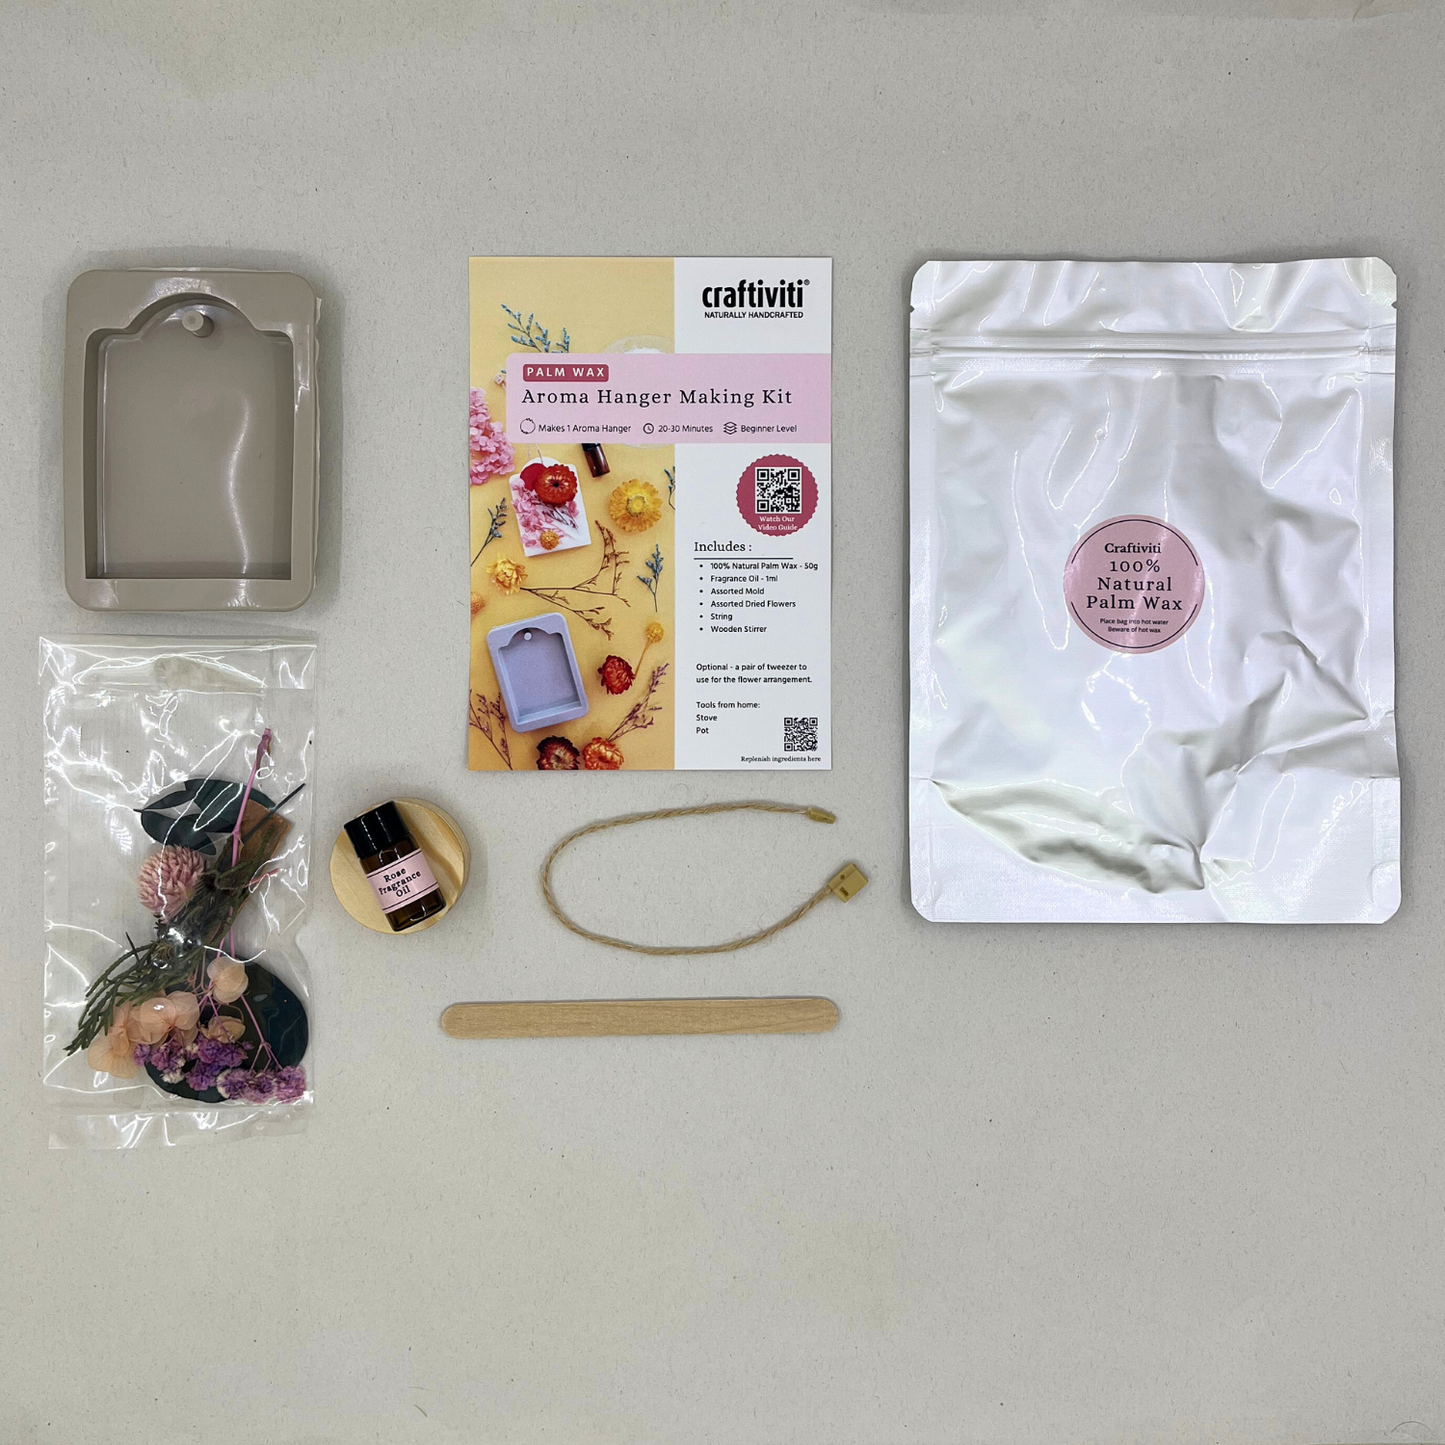 Mini Crafti-Kit - Palm Wax Aroma Hanger Making Kit